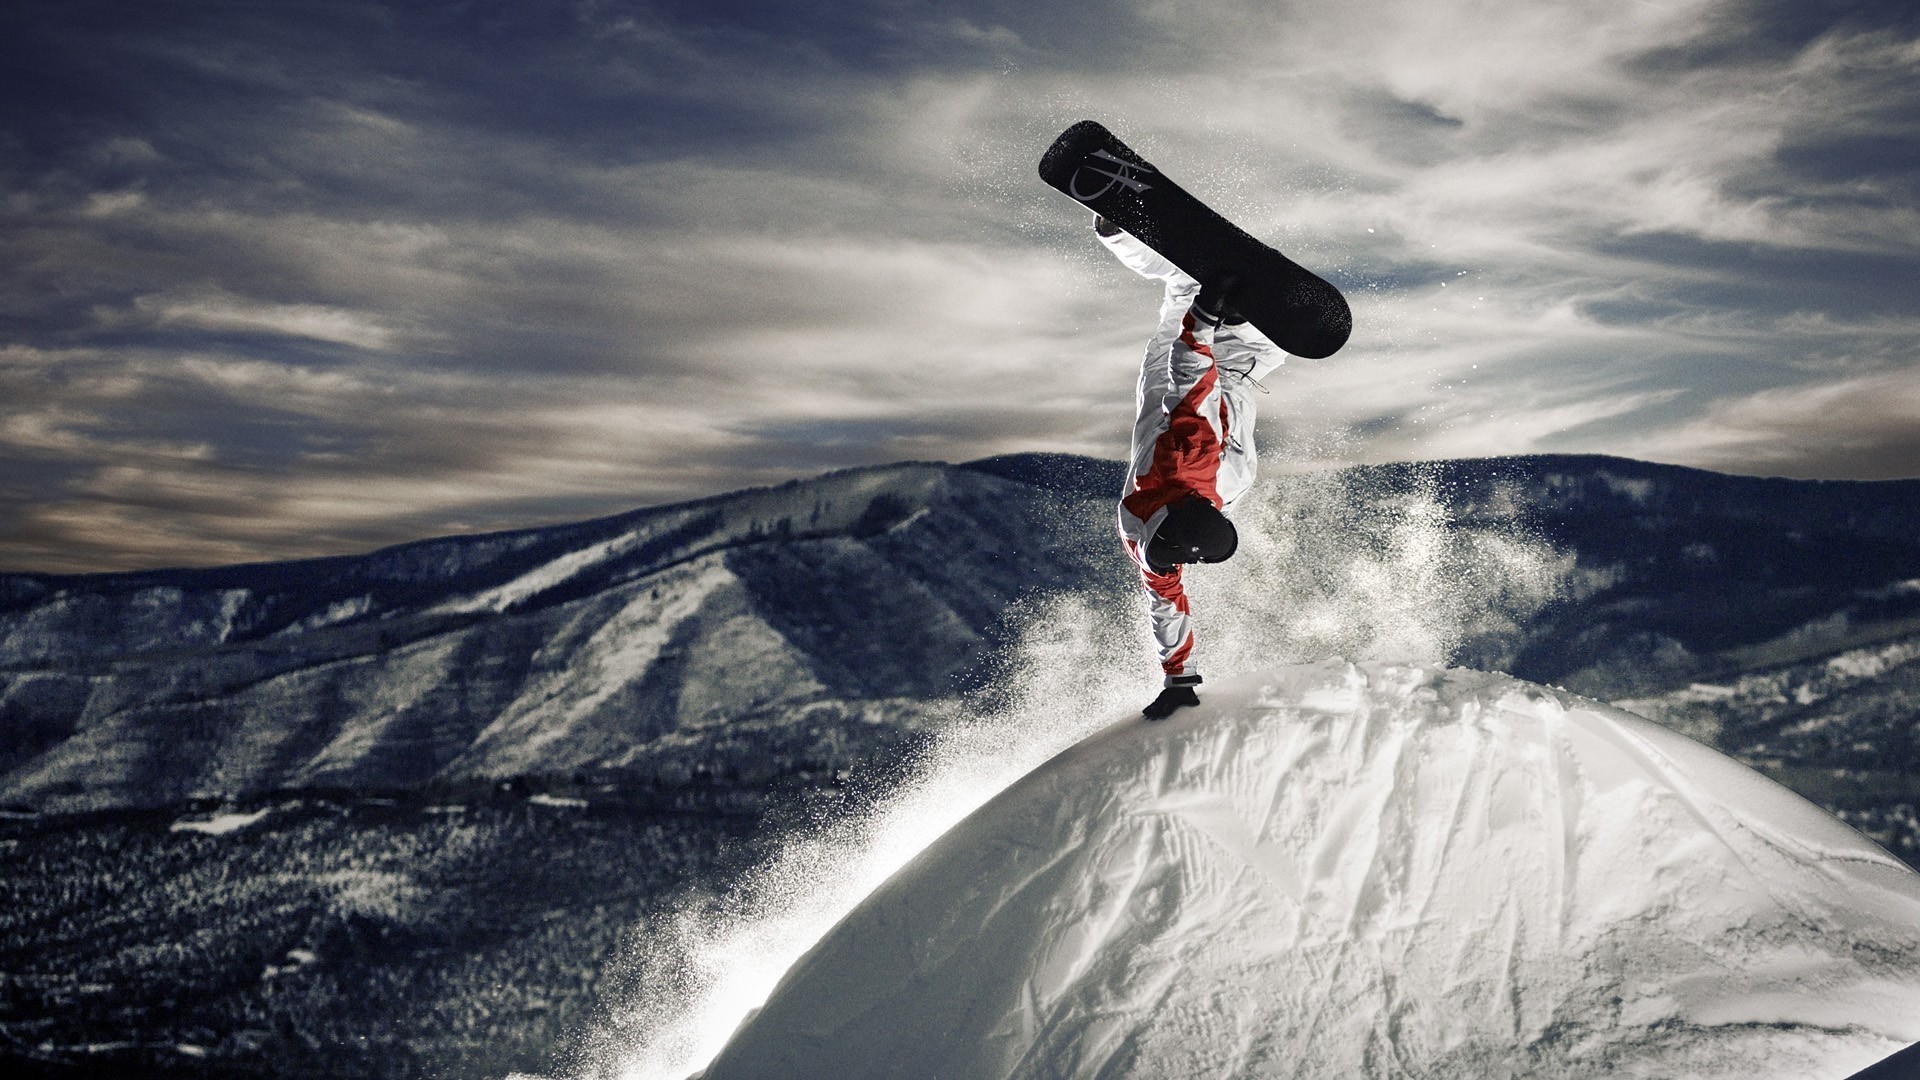 1920x1080 183974.jpg (JPEG-Grafik, 1920 Ã 1080 Pixel) - Skaliert (66%) | Sport |  Pinterest | Snowboarding and Snow board